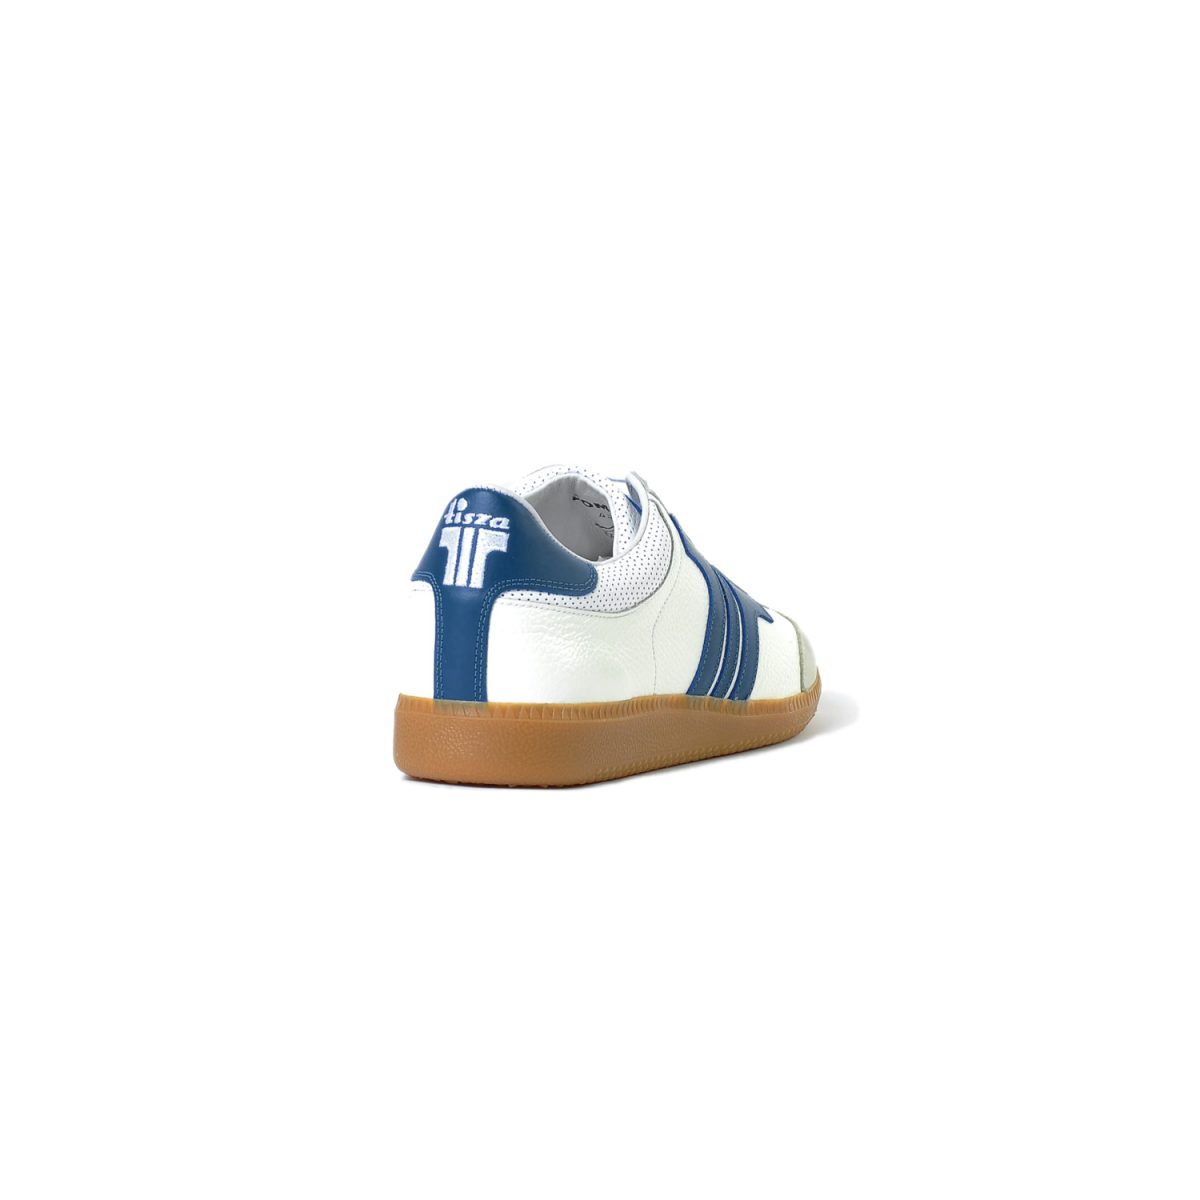 Tisza shoes - Compakt - White-blue